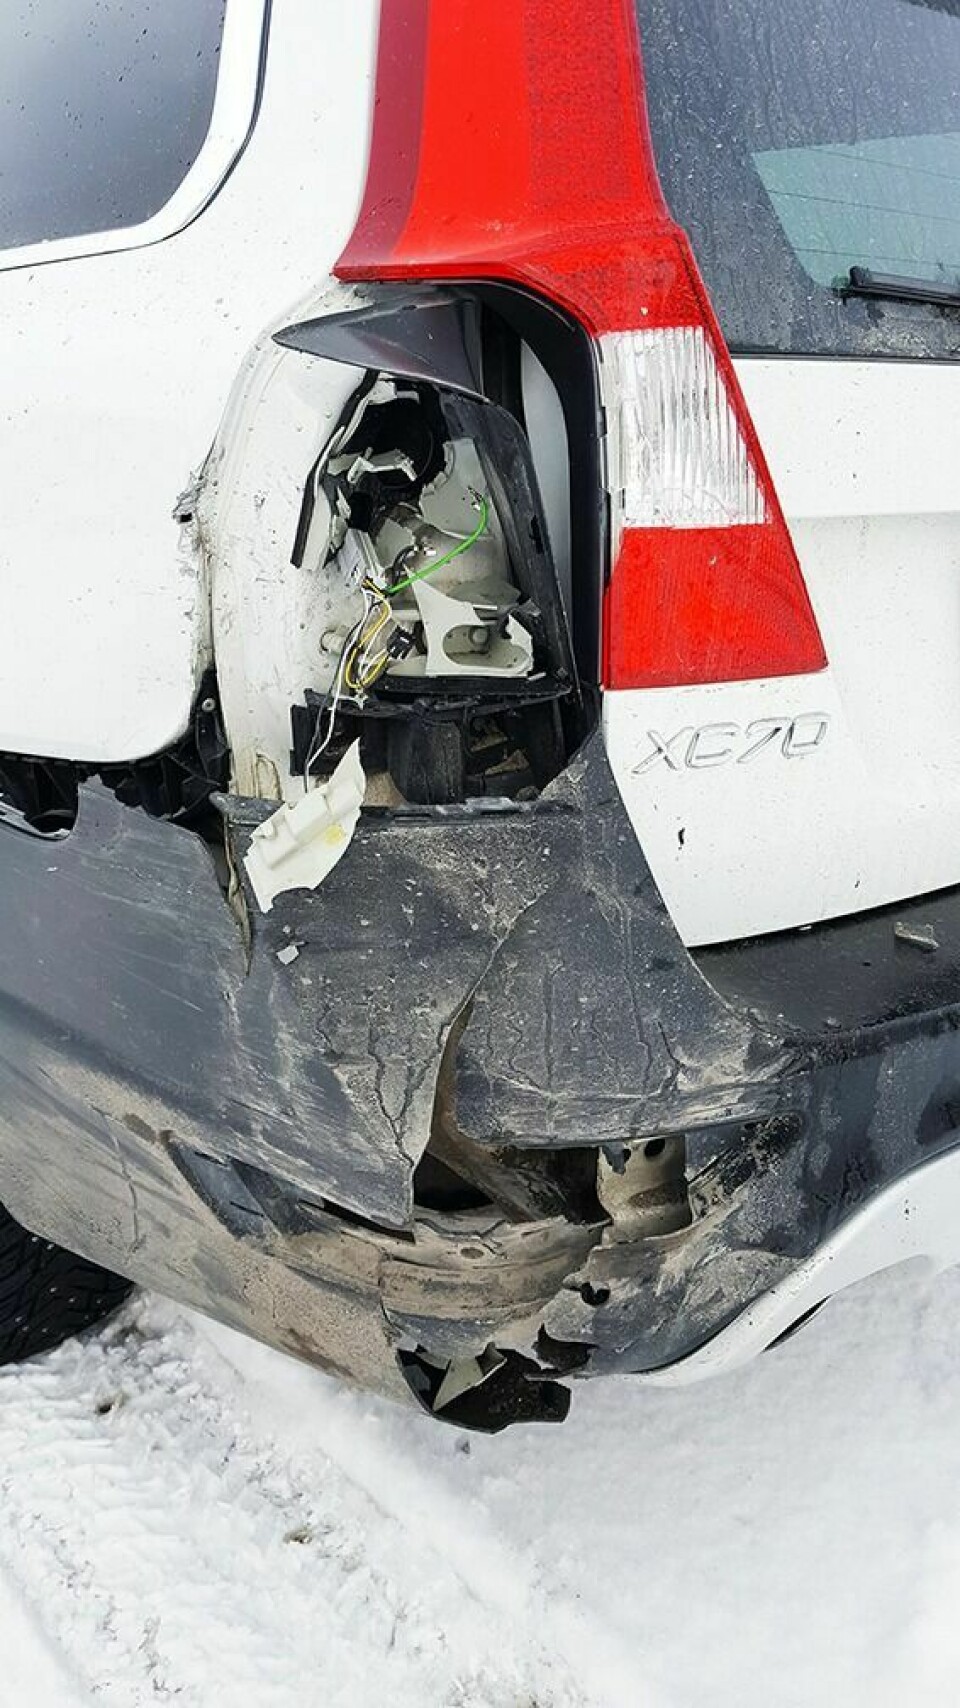 PÅKJØRT BAKFRA: Slik så skaden ut på bilen som ble påkjørt bakfra i Olsborgkrysset sist fredag.